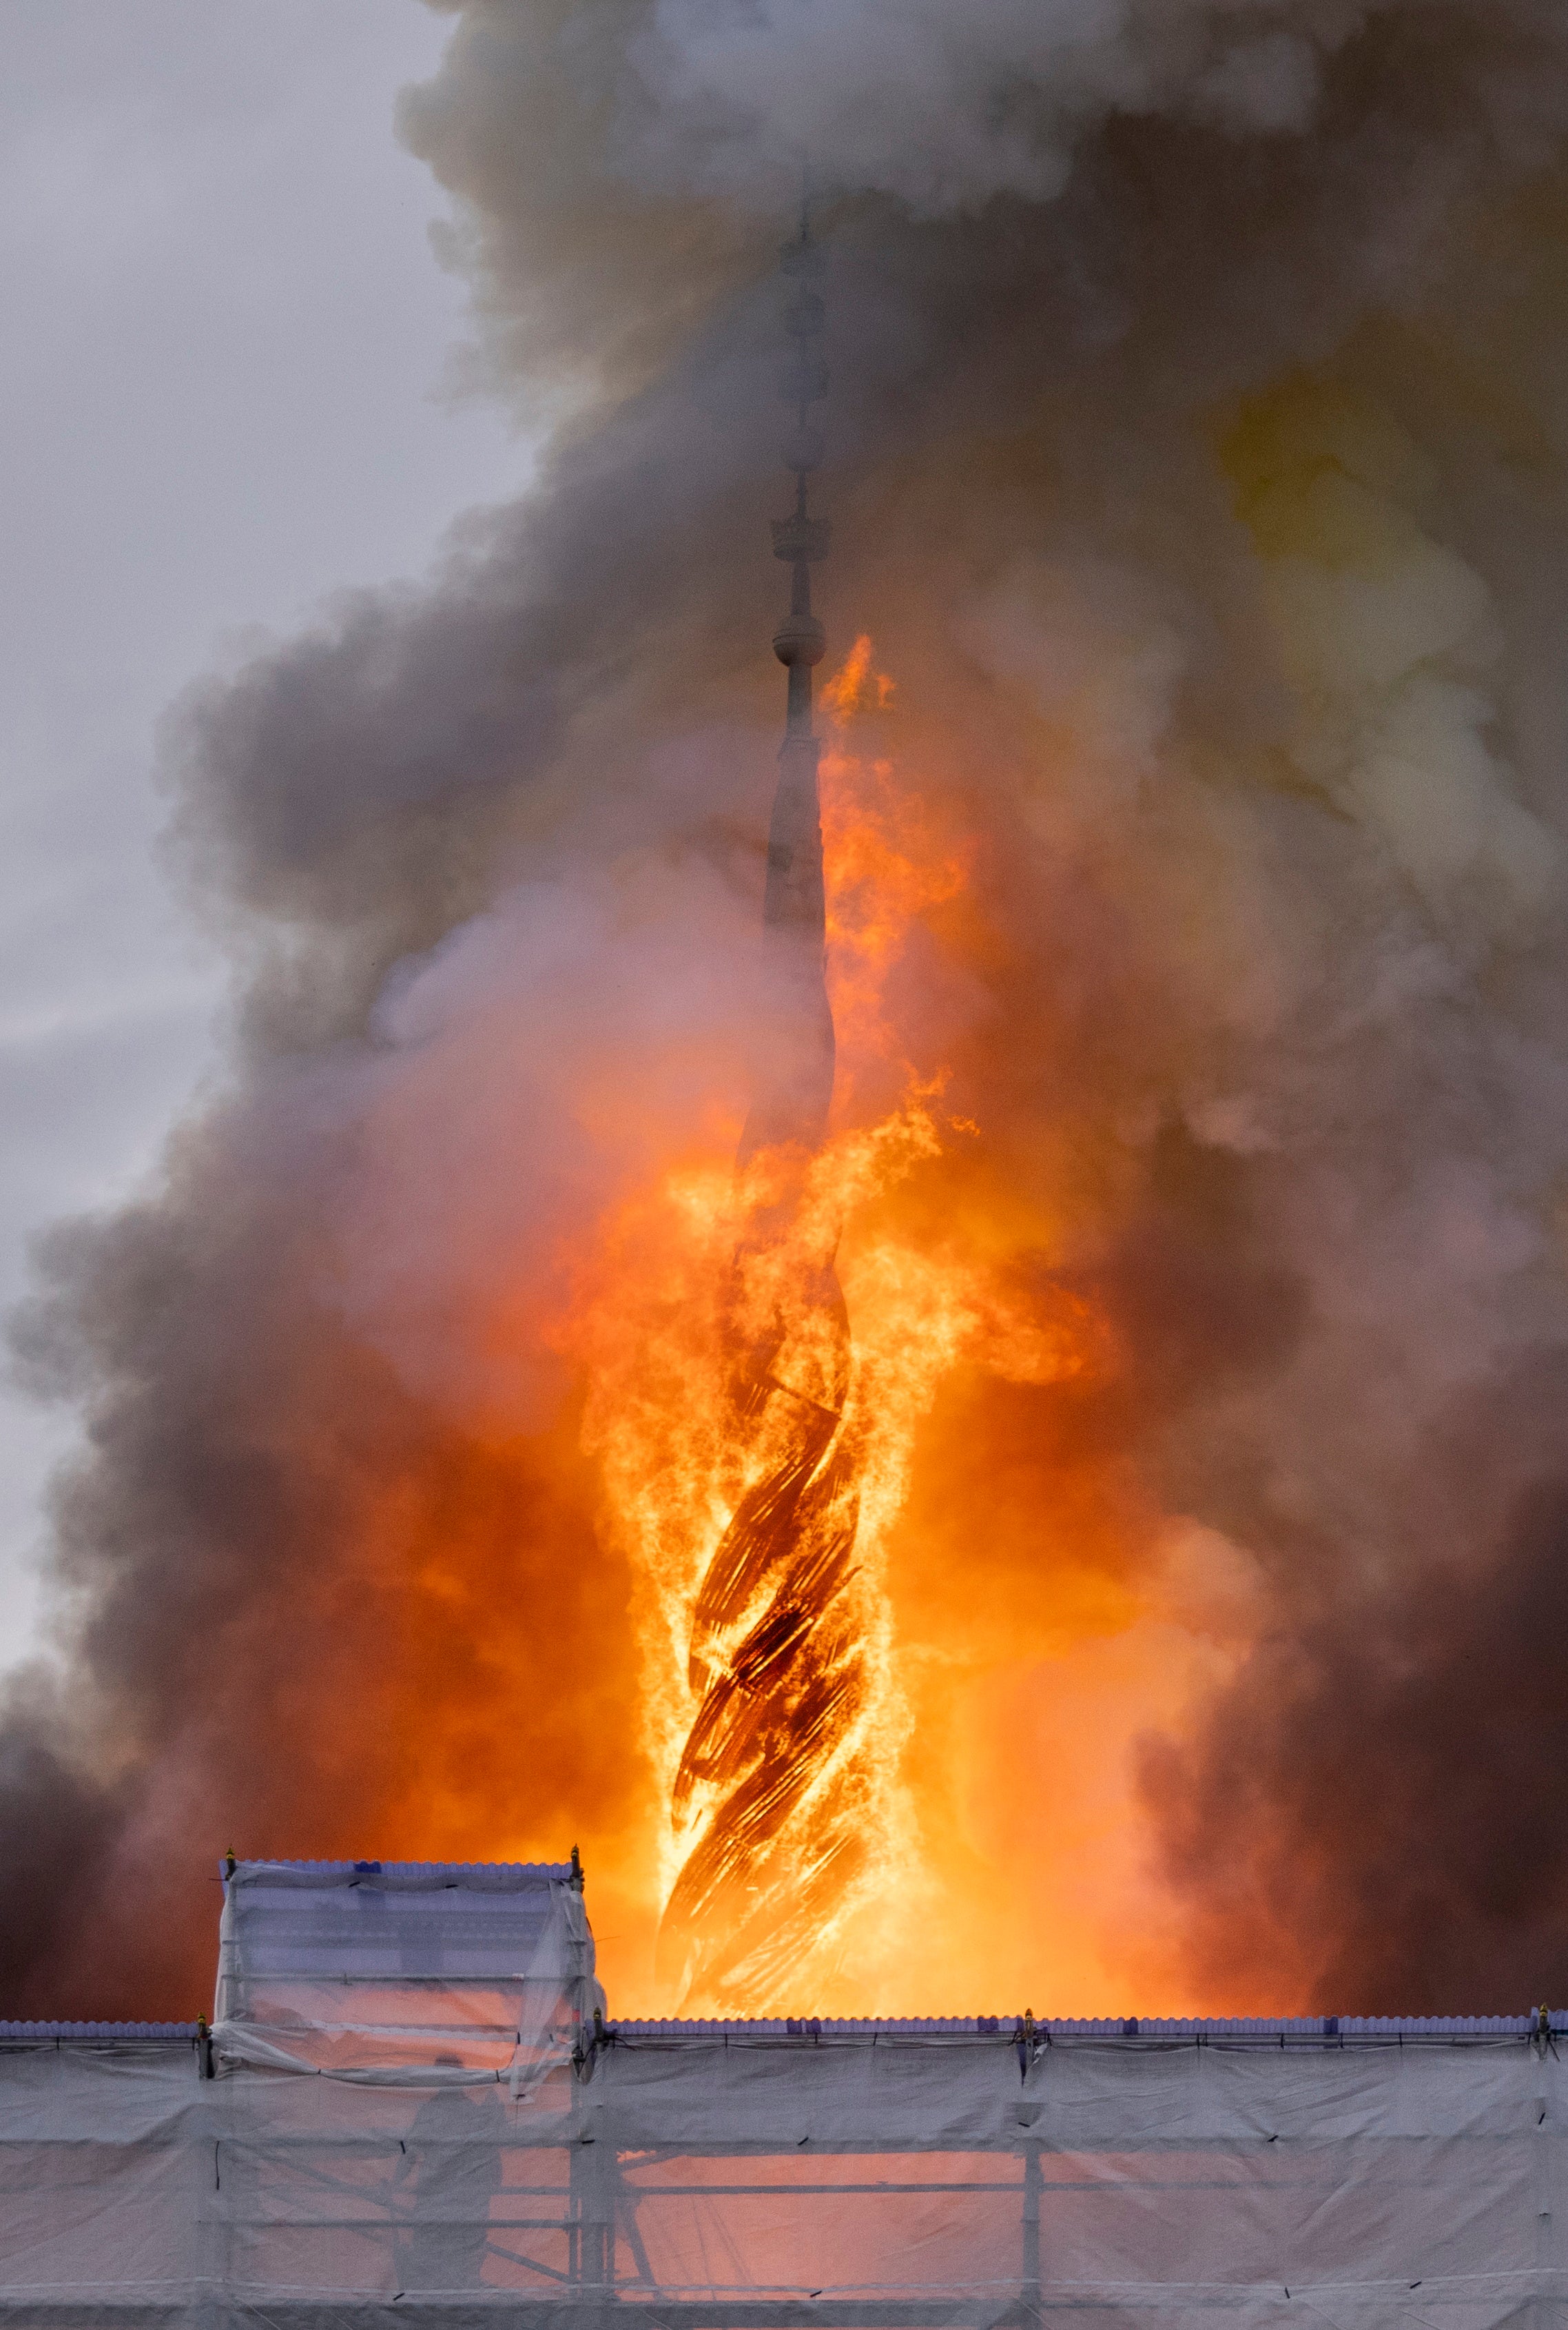 copenhagen fire: spire of historic stock exchange collapses in inferno